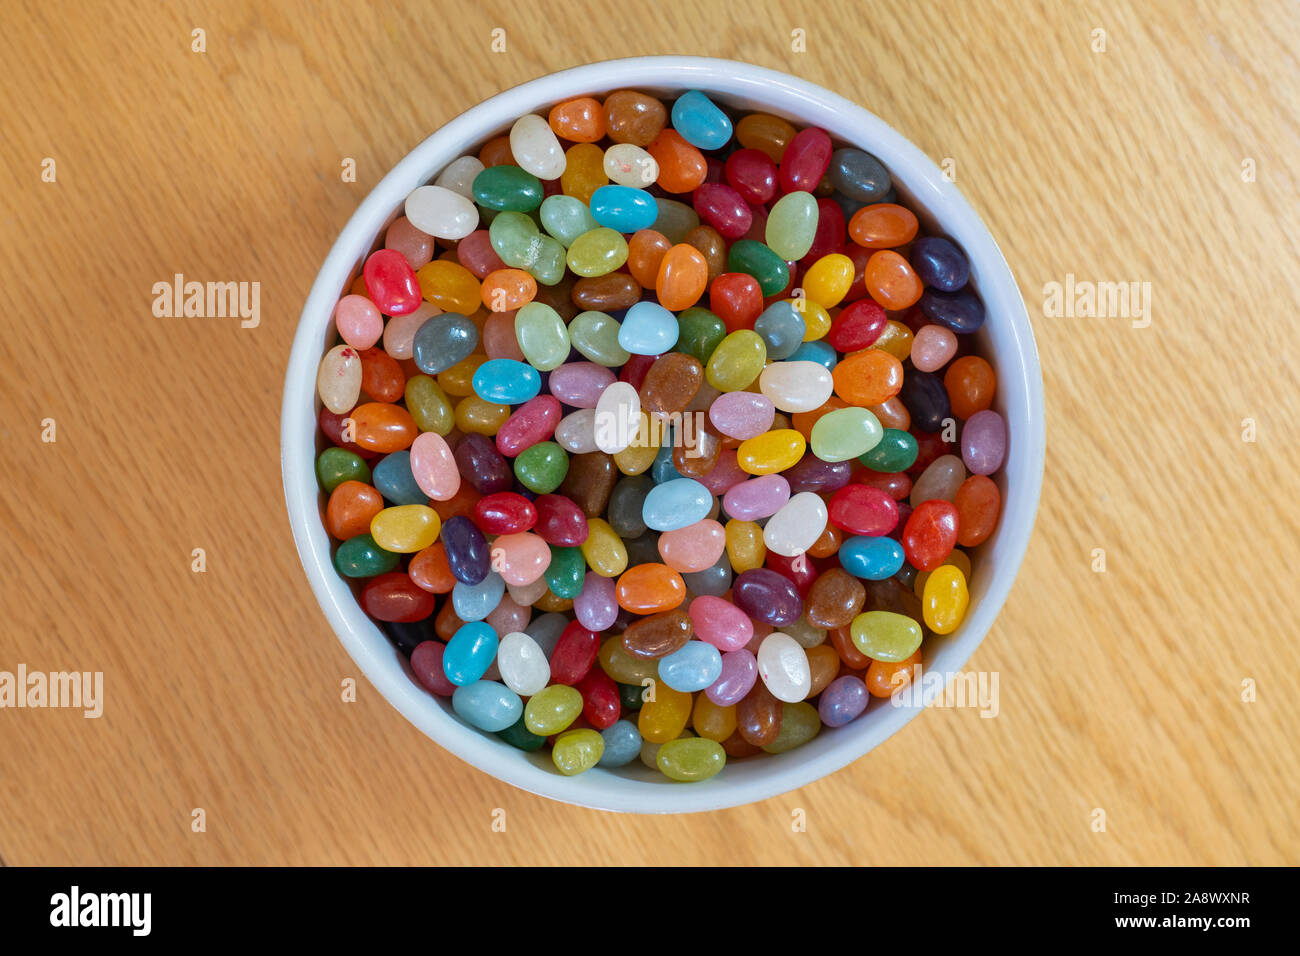 Un assortiment de bonbons haricots colorés dans un bol blanc - bonbons ou des bonbons Banque D'Images